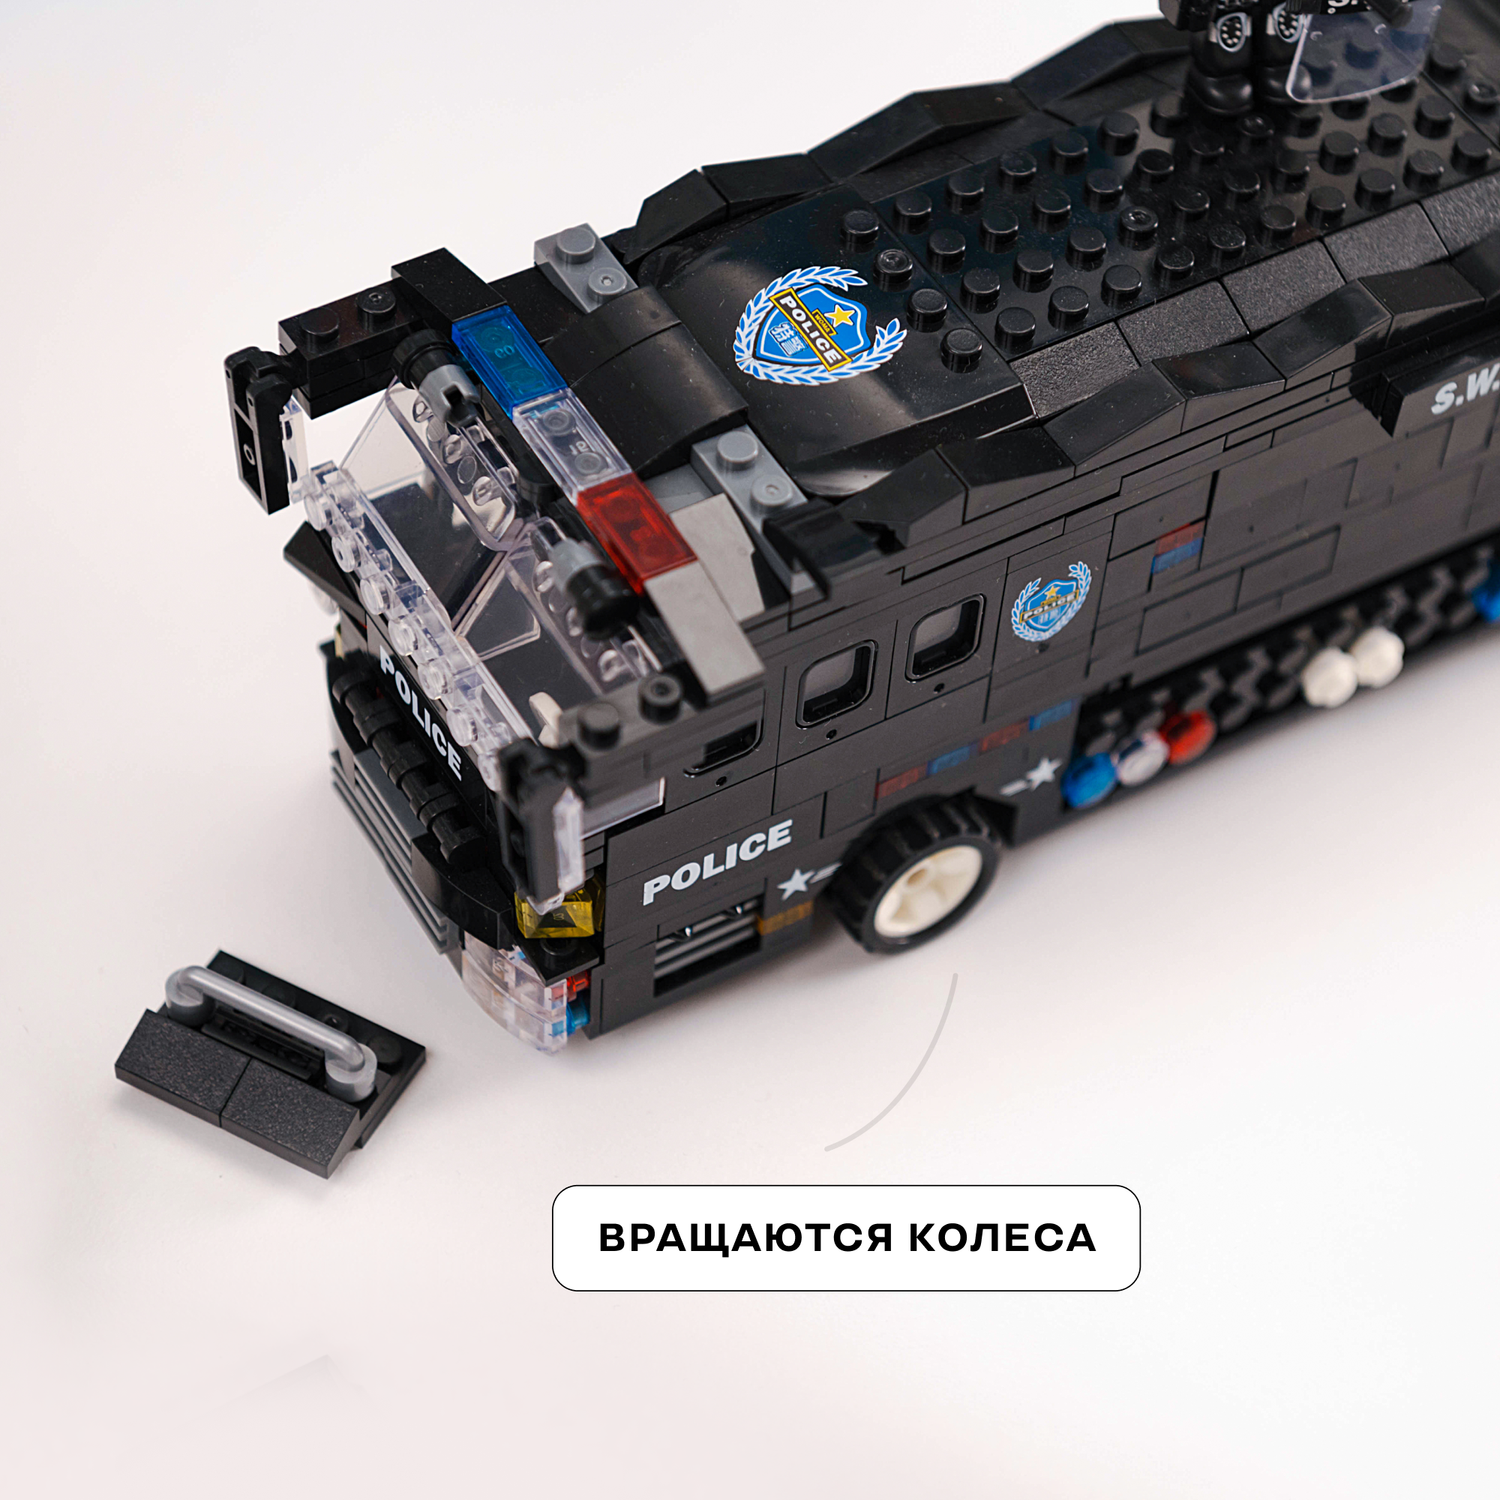 Конструктор Kids Build Полицейский автобус 6в1 спецназ 1092 детали - фото 6